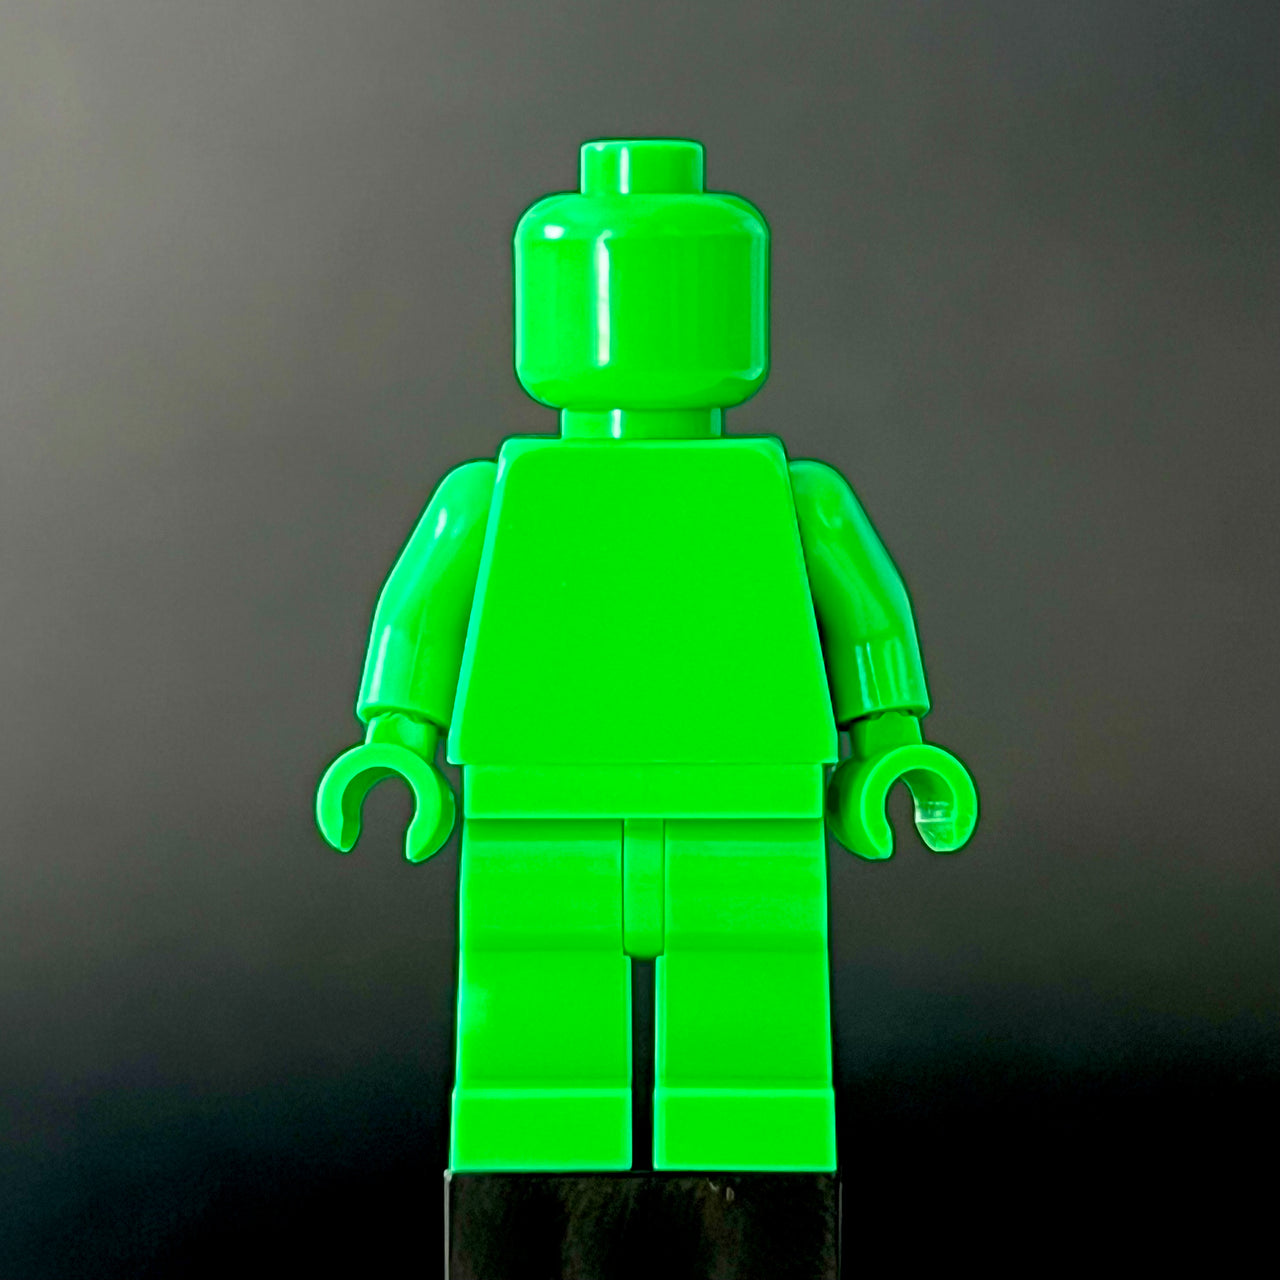 Bright Green Standard Monochrome Figure